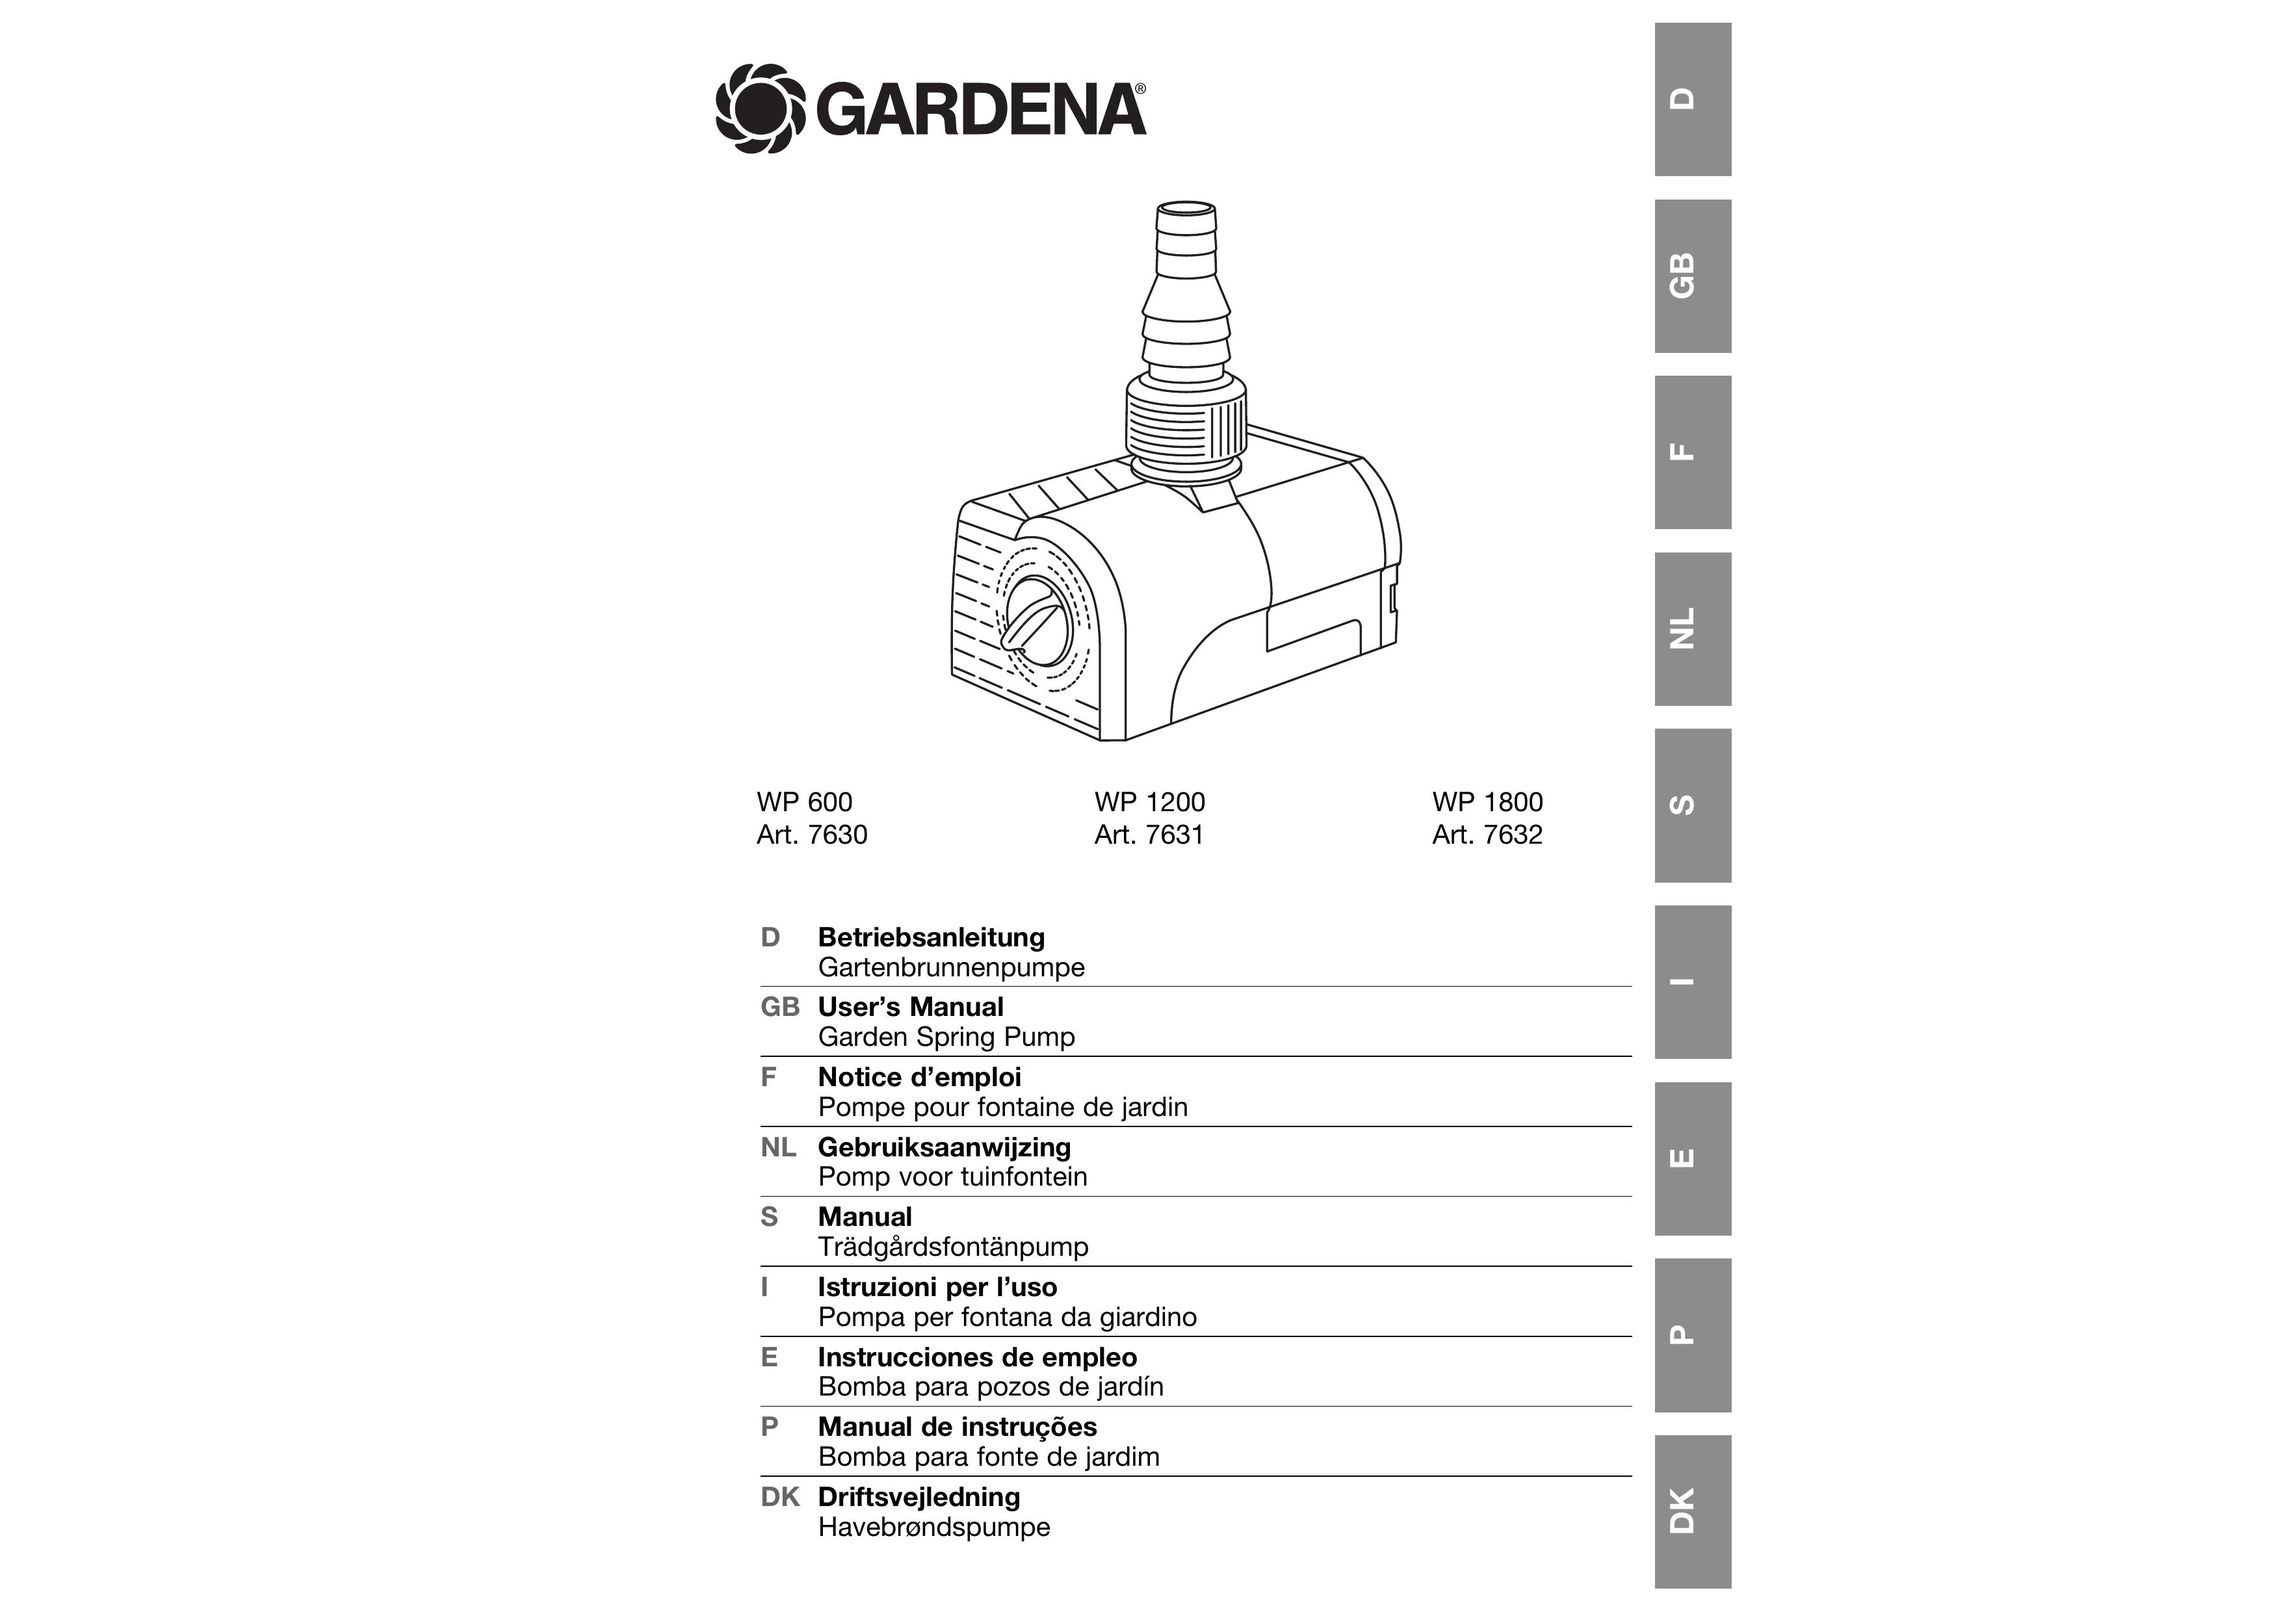 Gardena WP1200 Water Pump User Manual